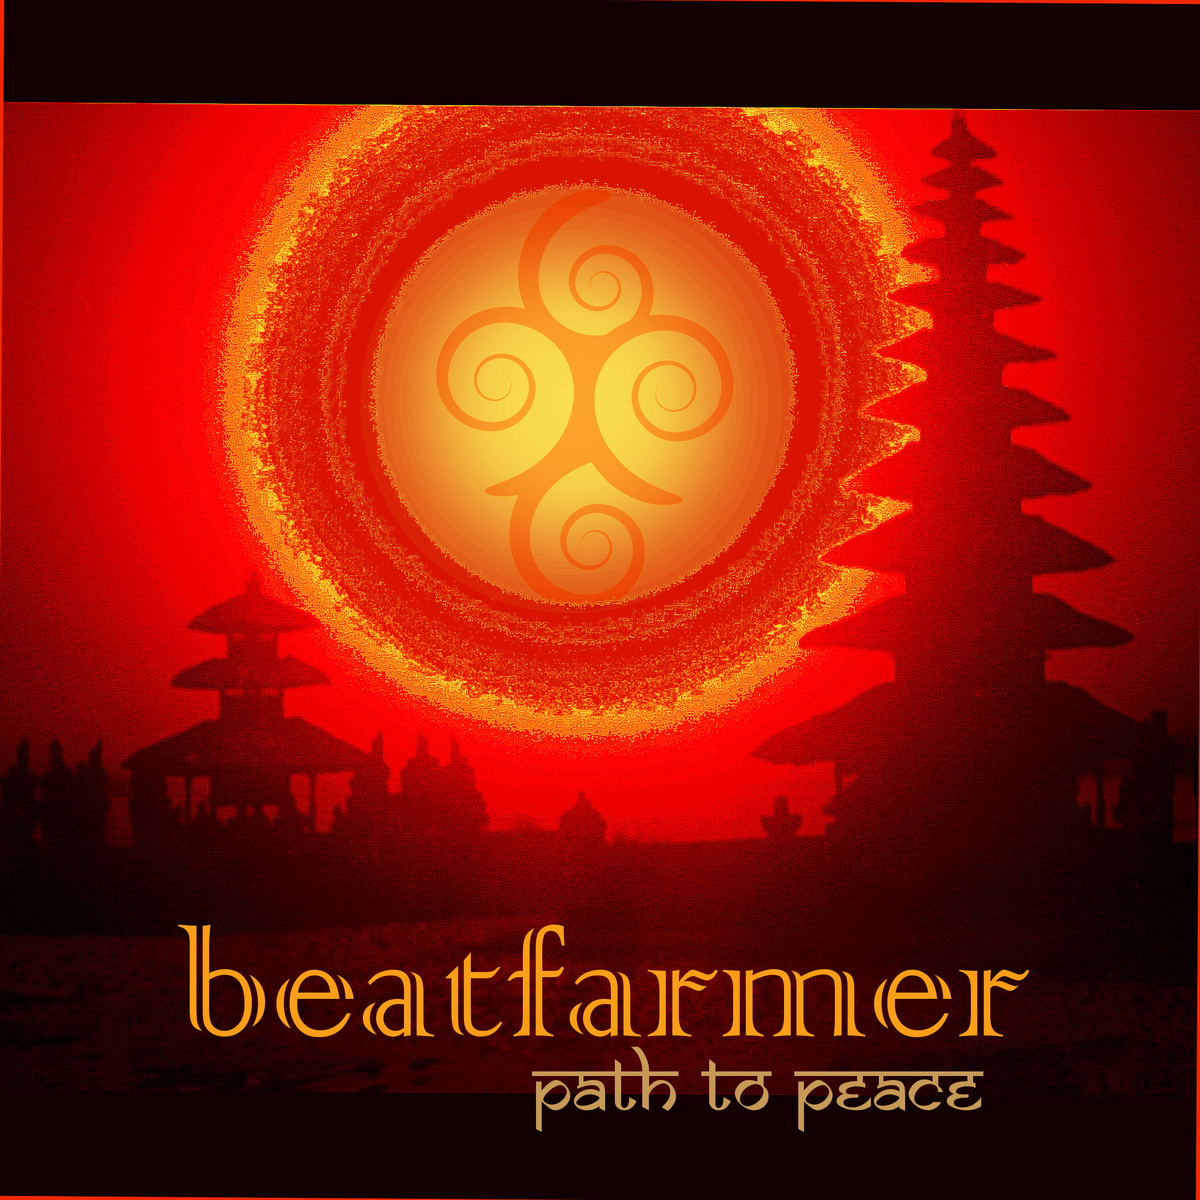 Sii mai Beatfarmer - Path to Peace (live edit)